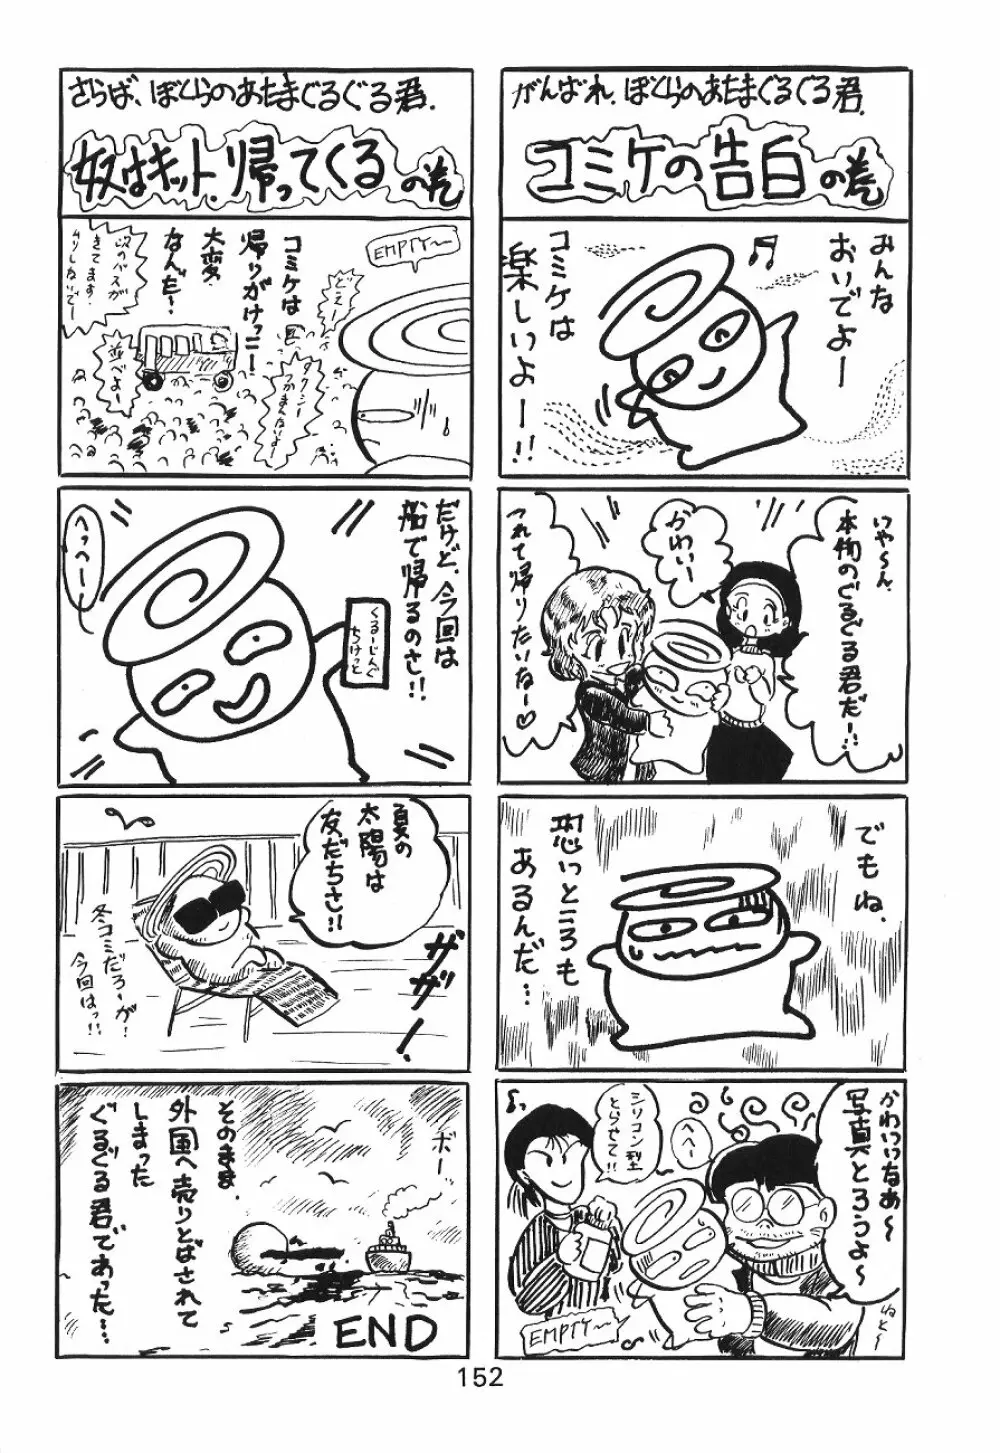 KATZE 7 上巻 - page153